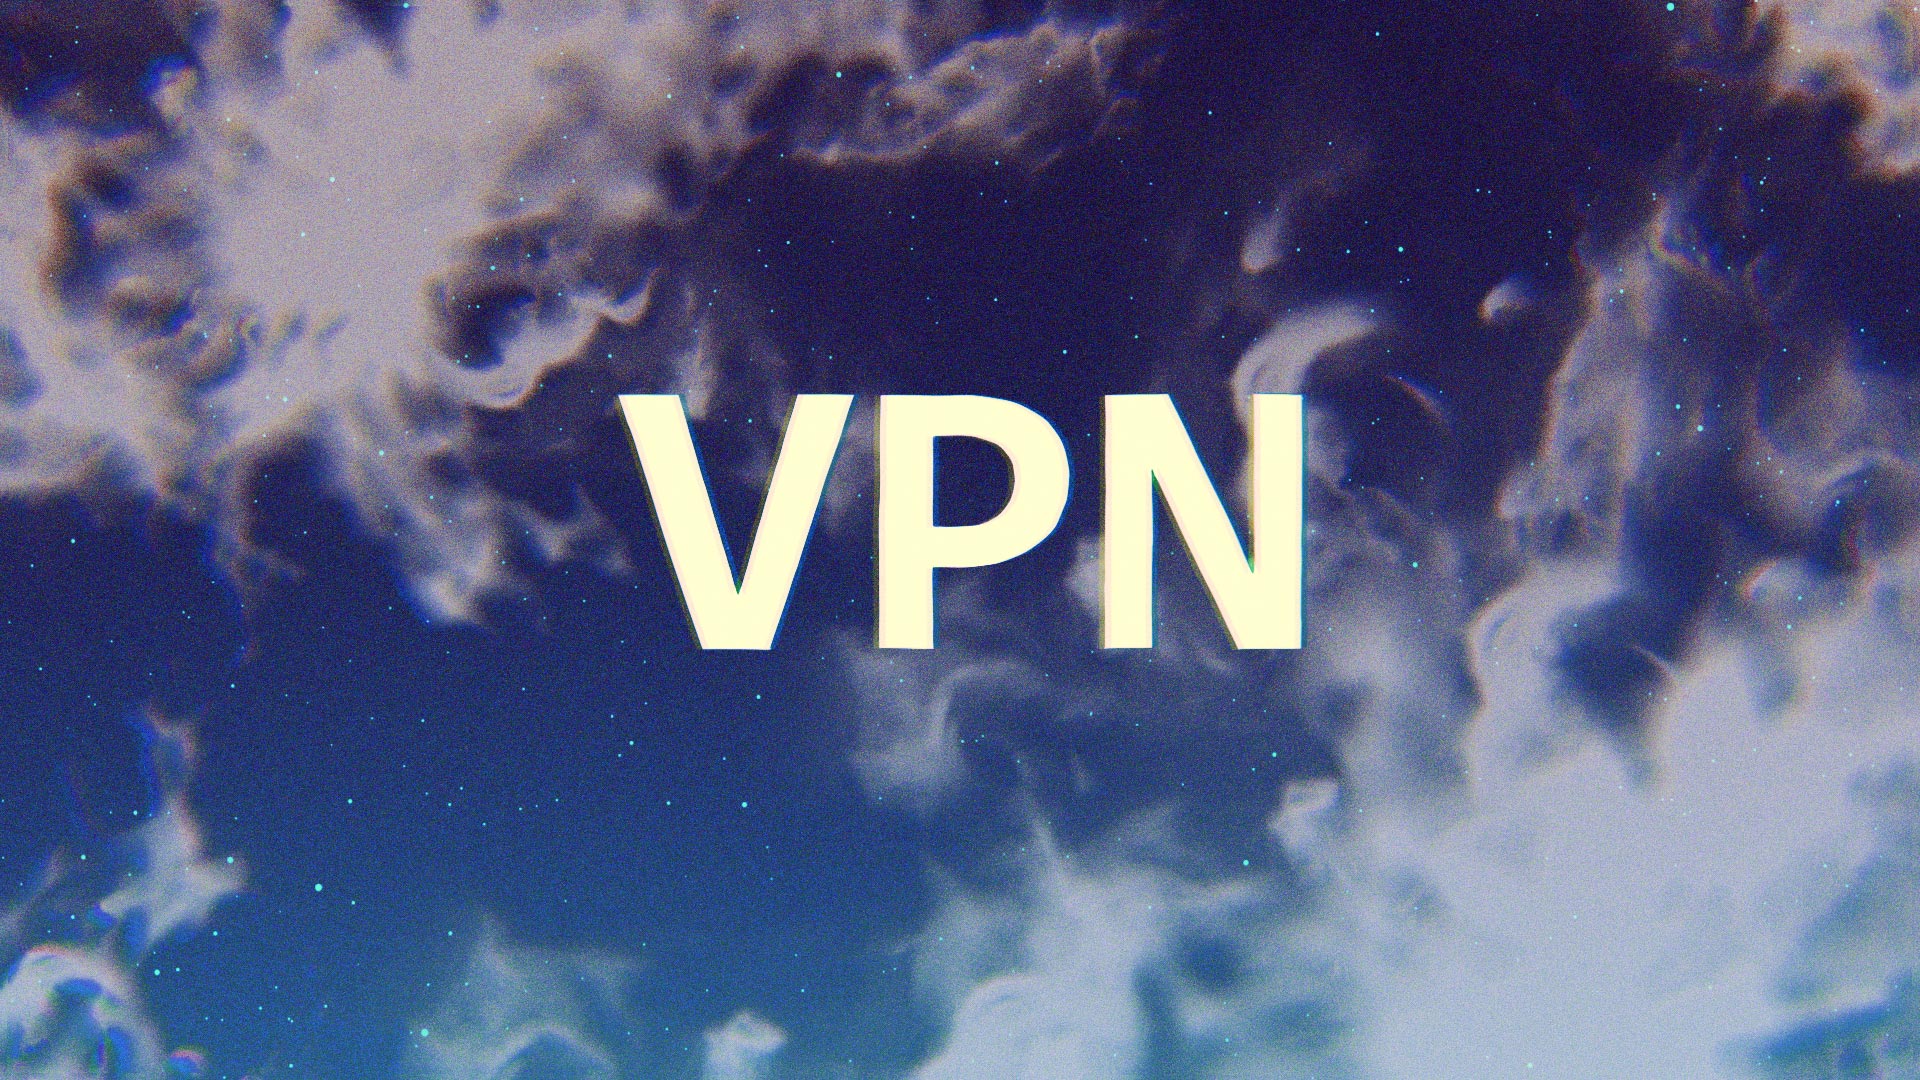 Как создать собственный VPN-сервис